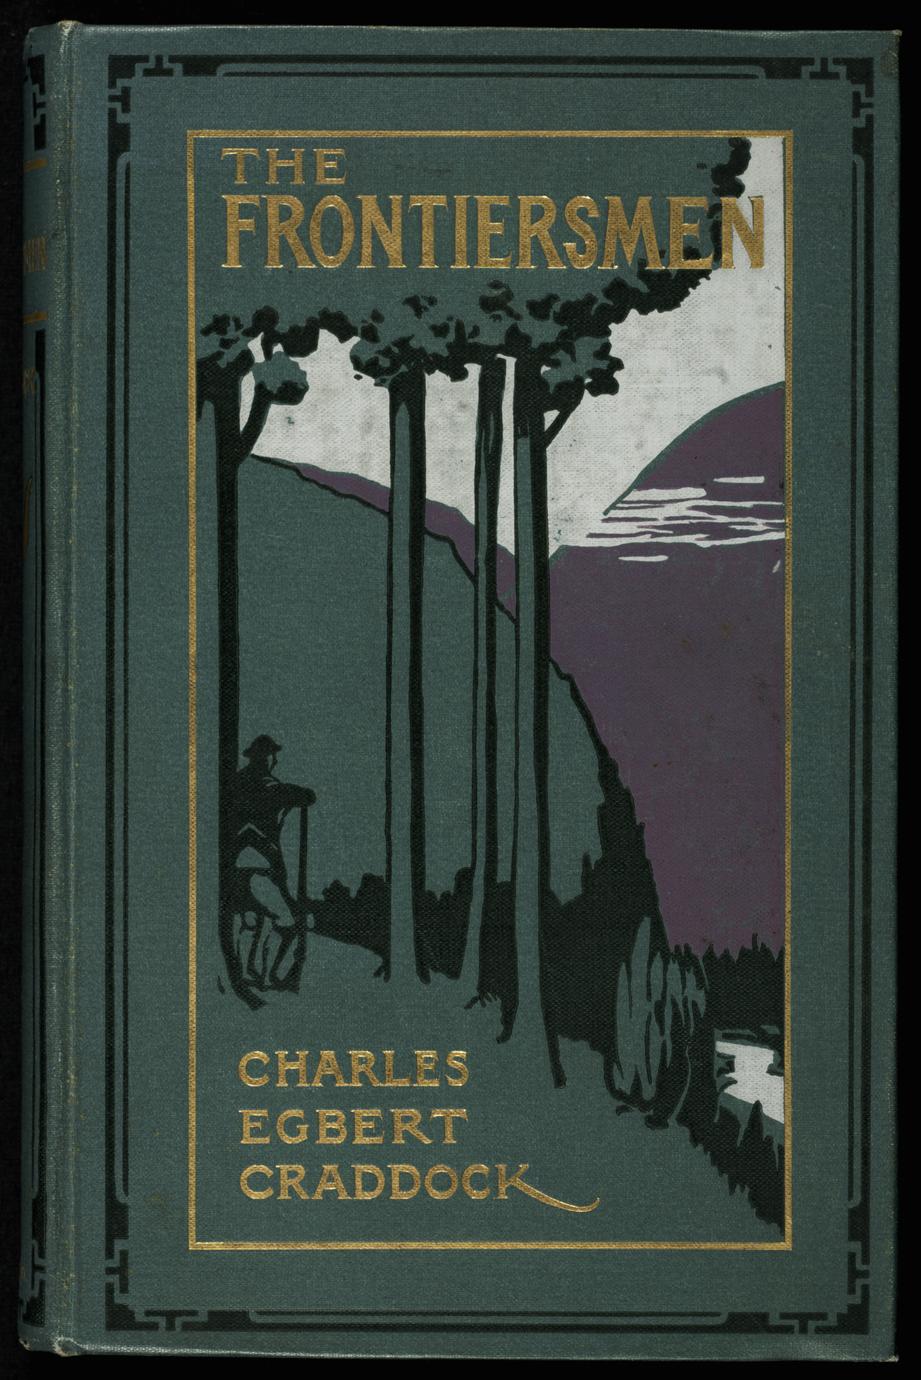 The frontiersmen (1 of 2)